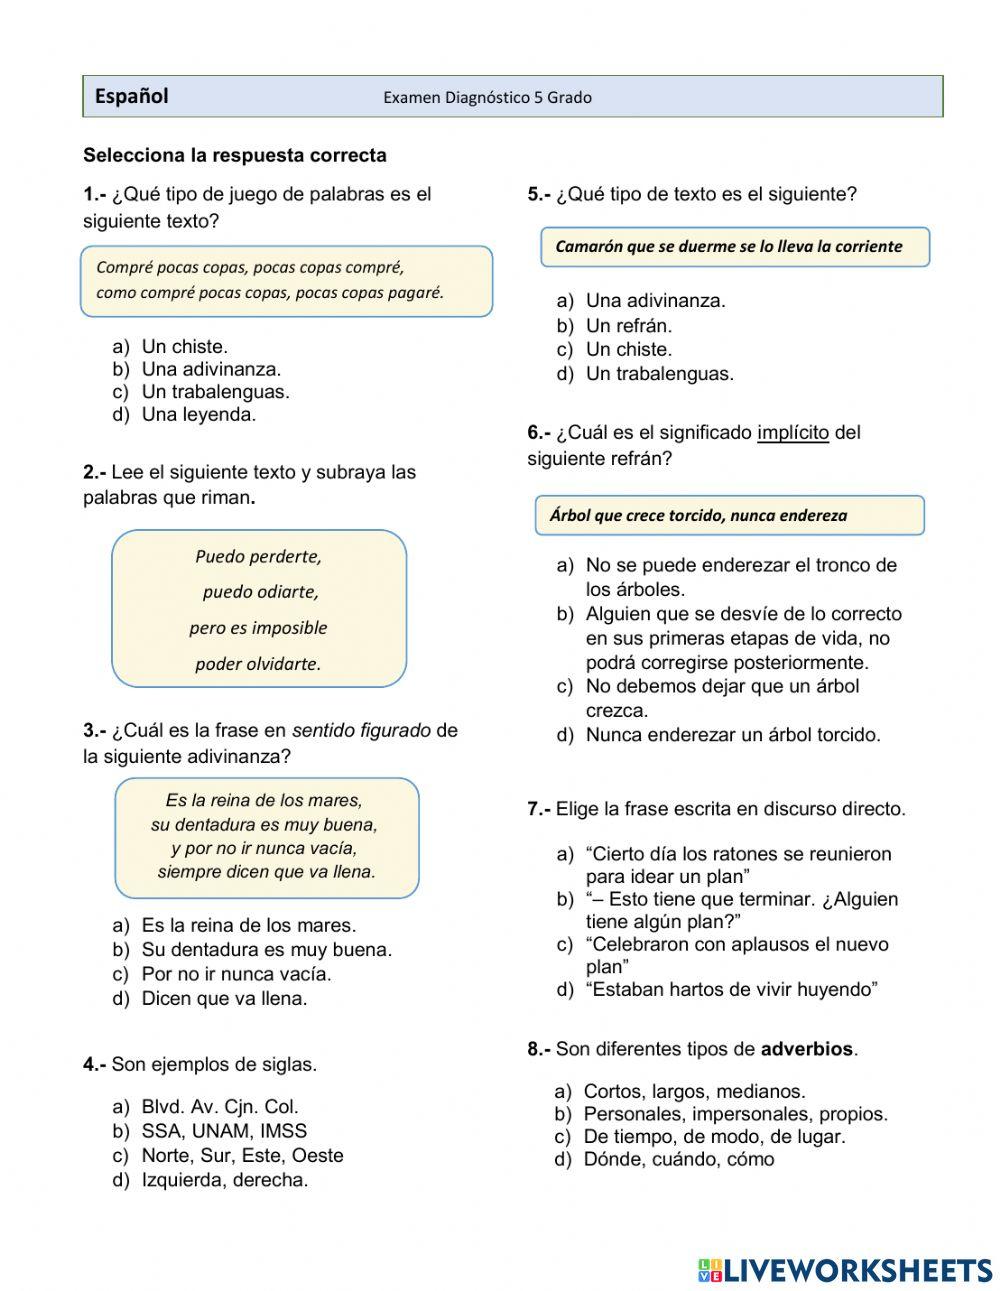 Diagnóstico 5to español